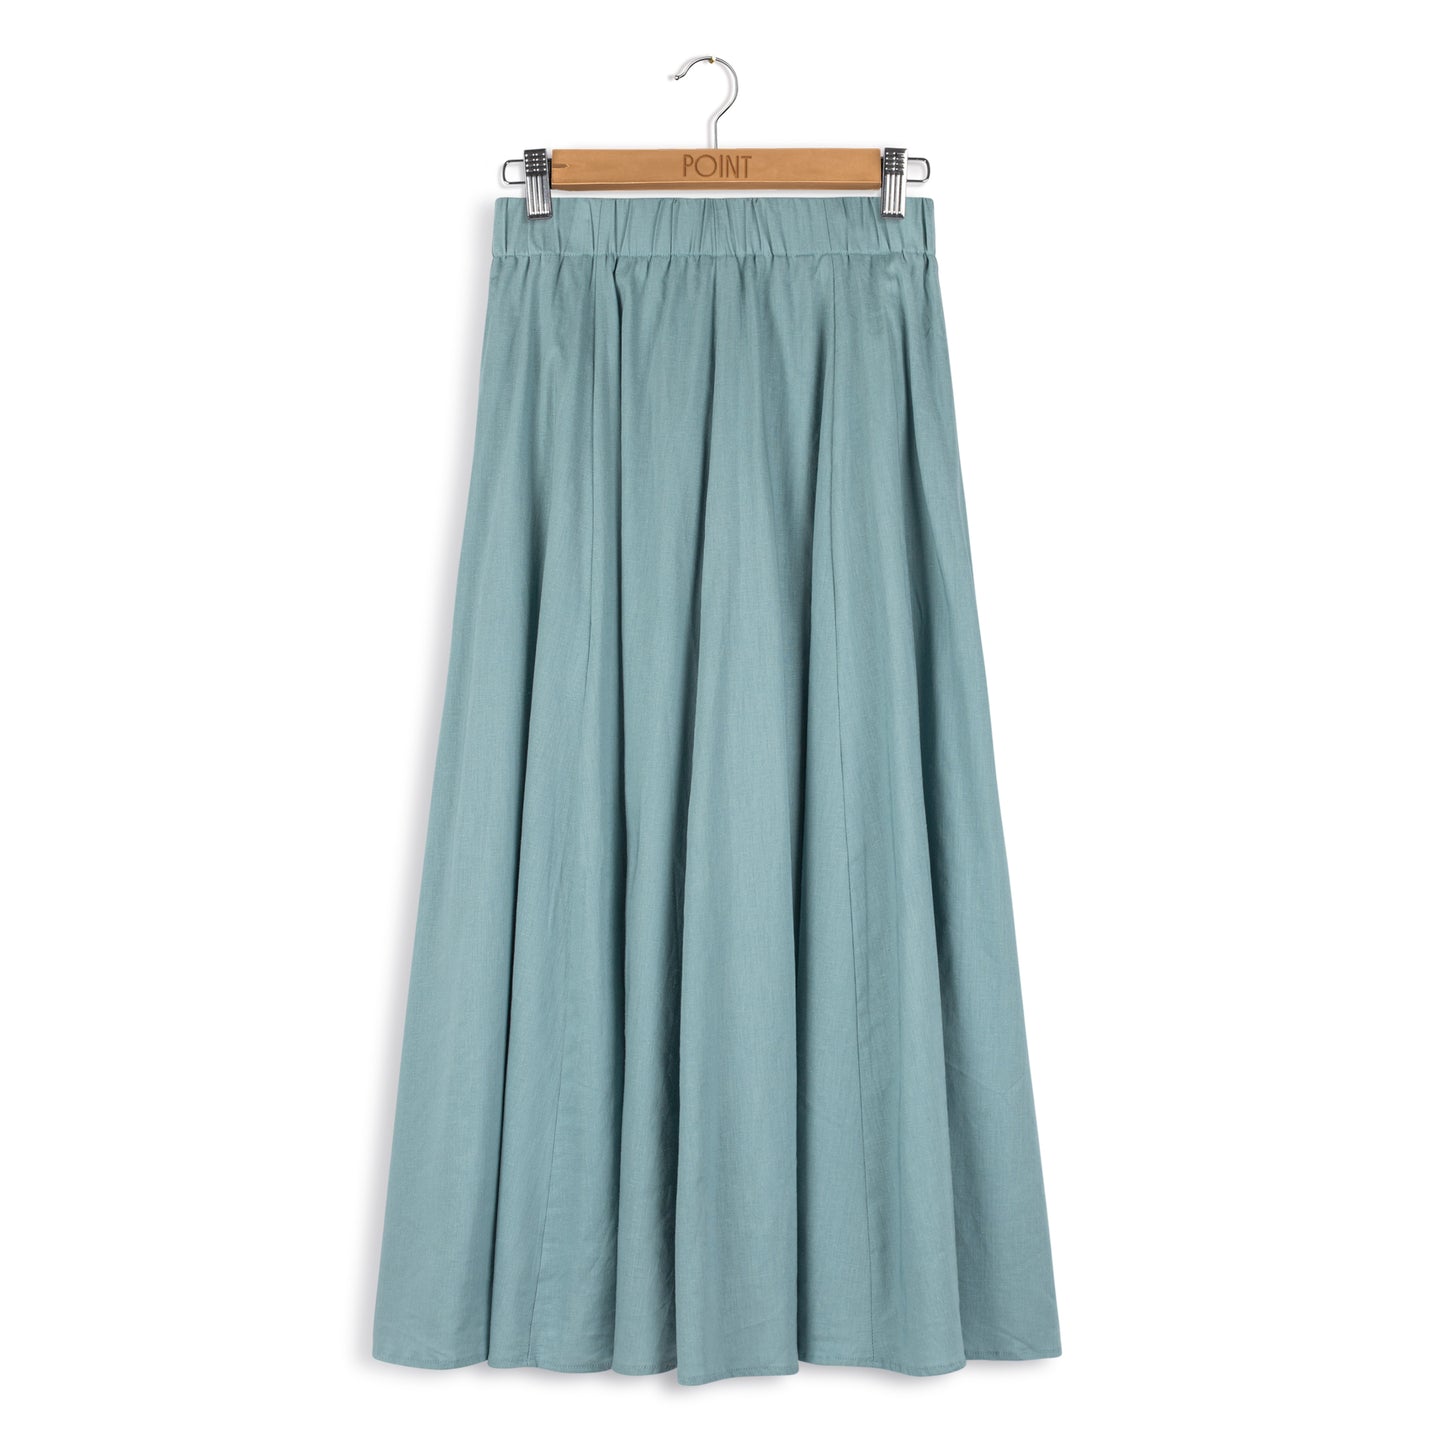 point stretch linen skirt